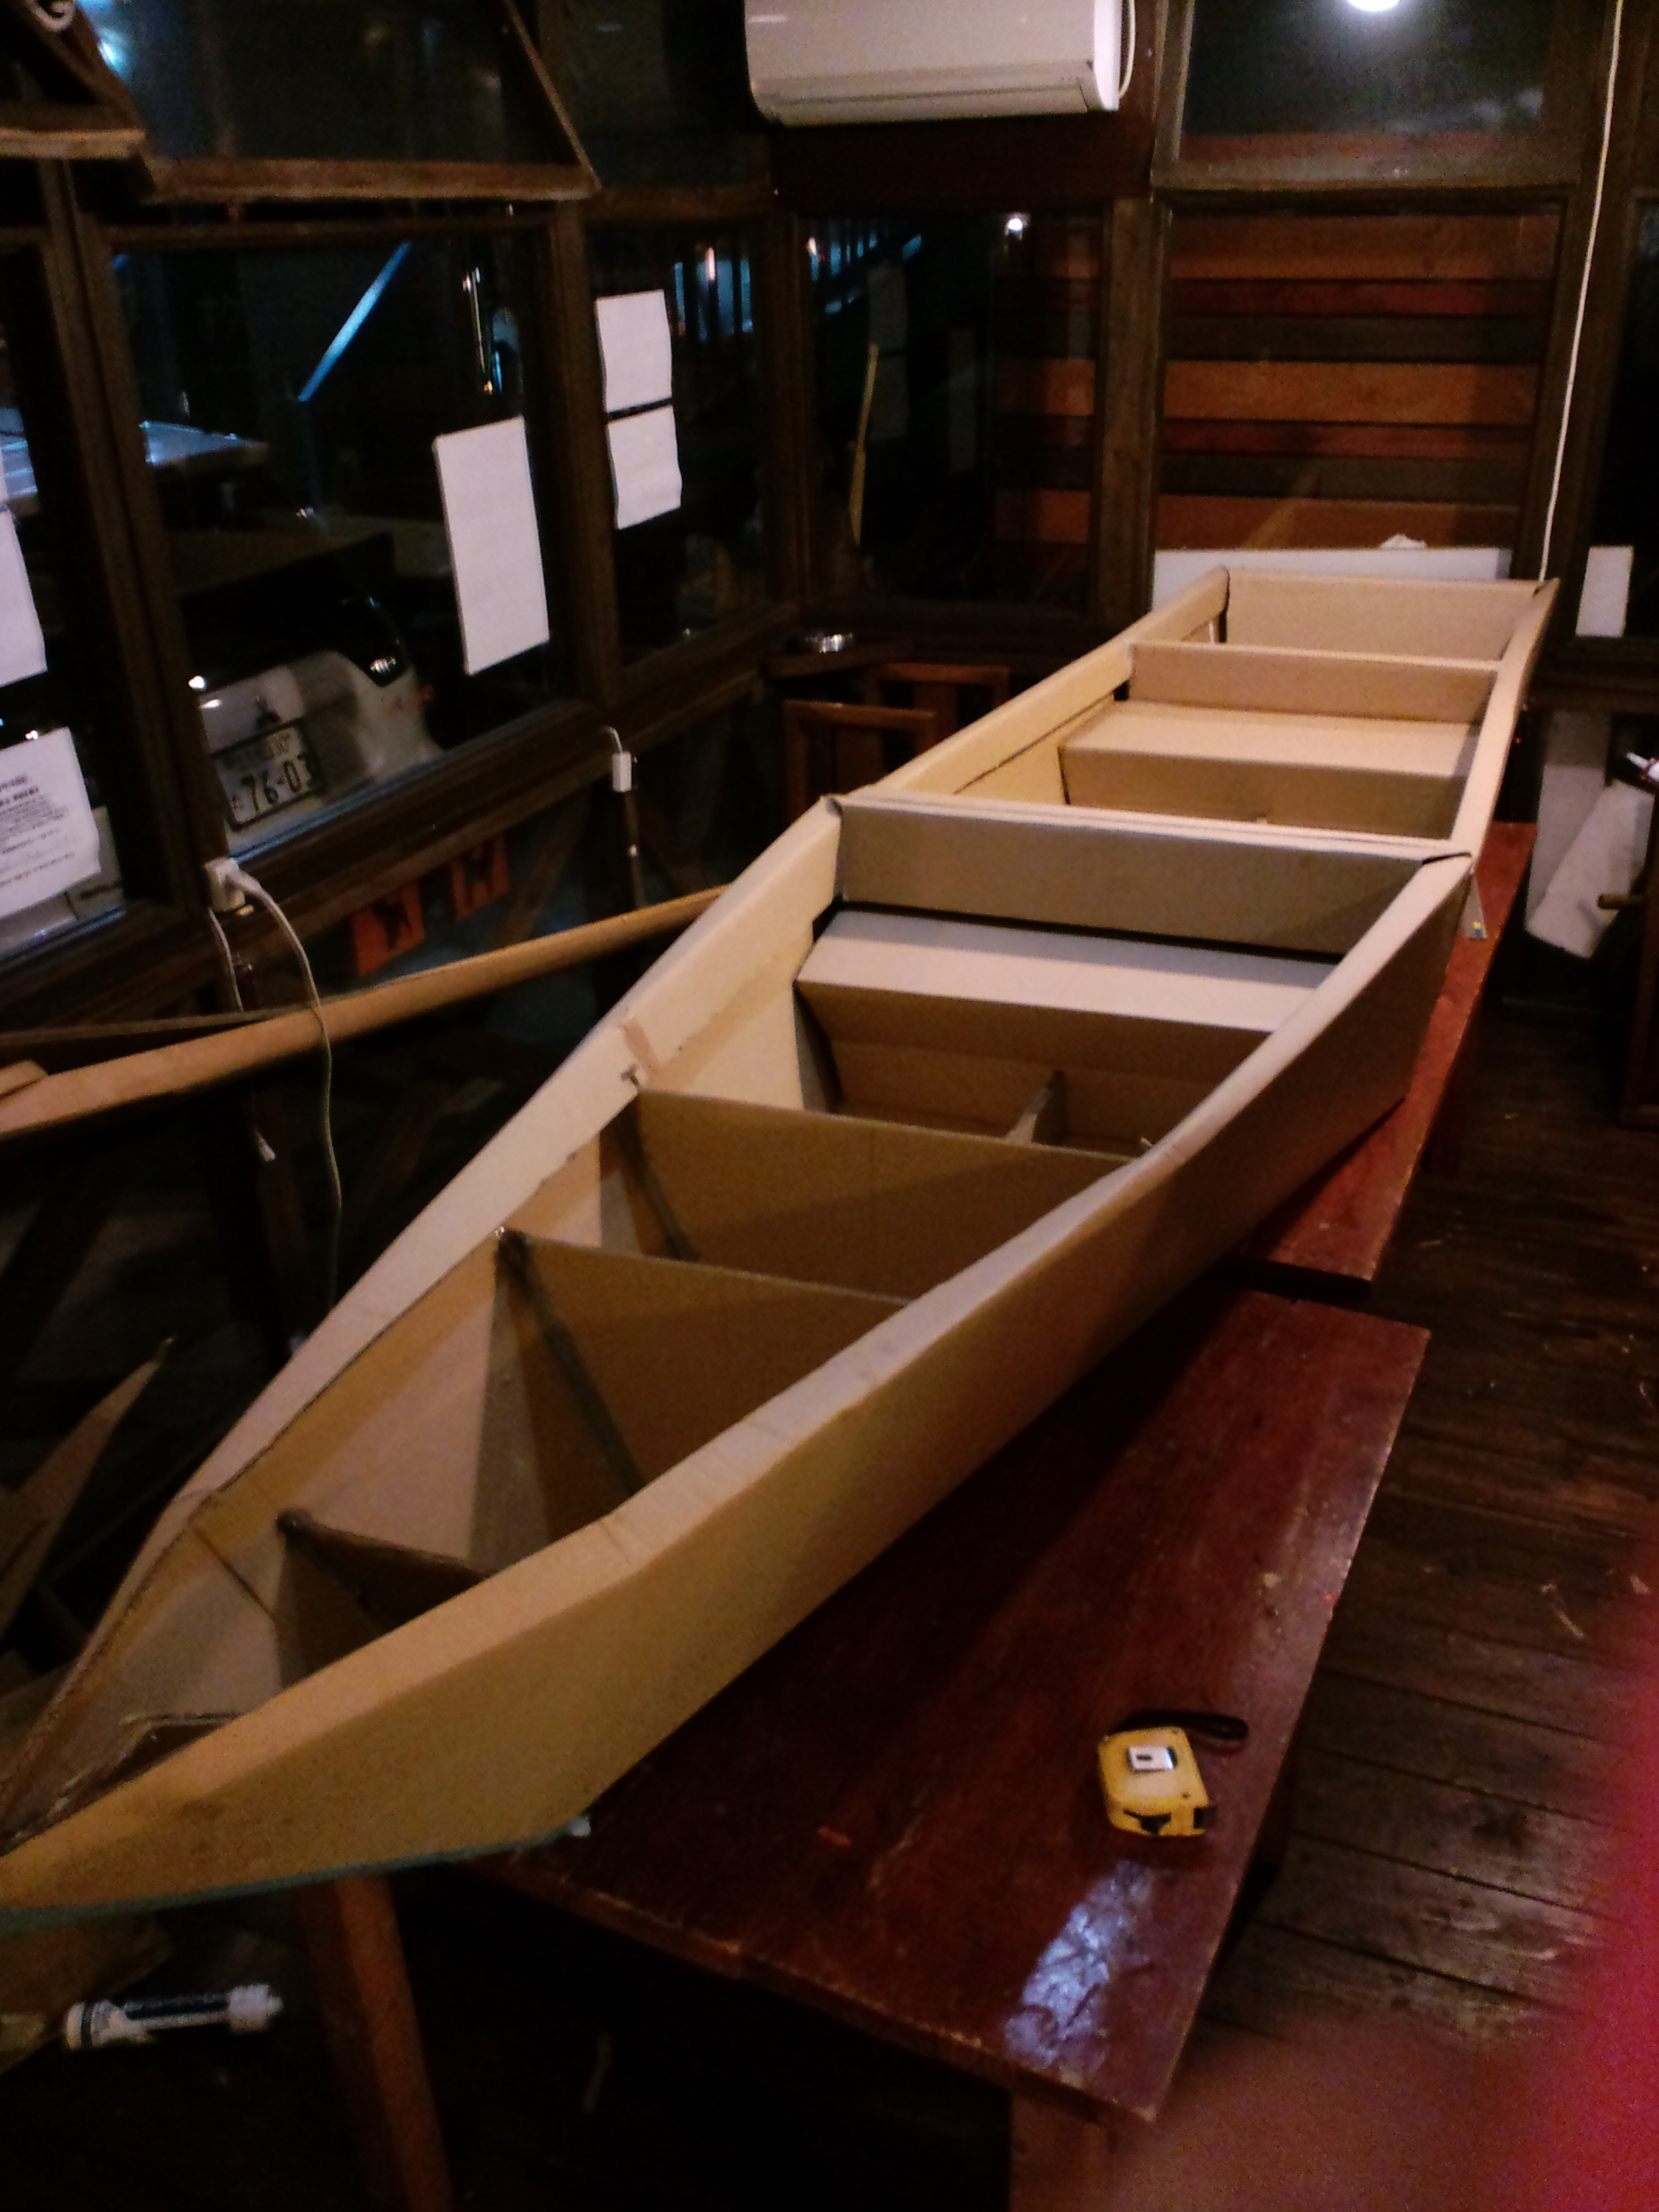 全日本 紫川ダンボールボート大会 常設展示室 北九州市 時と風の博物館